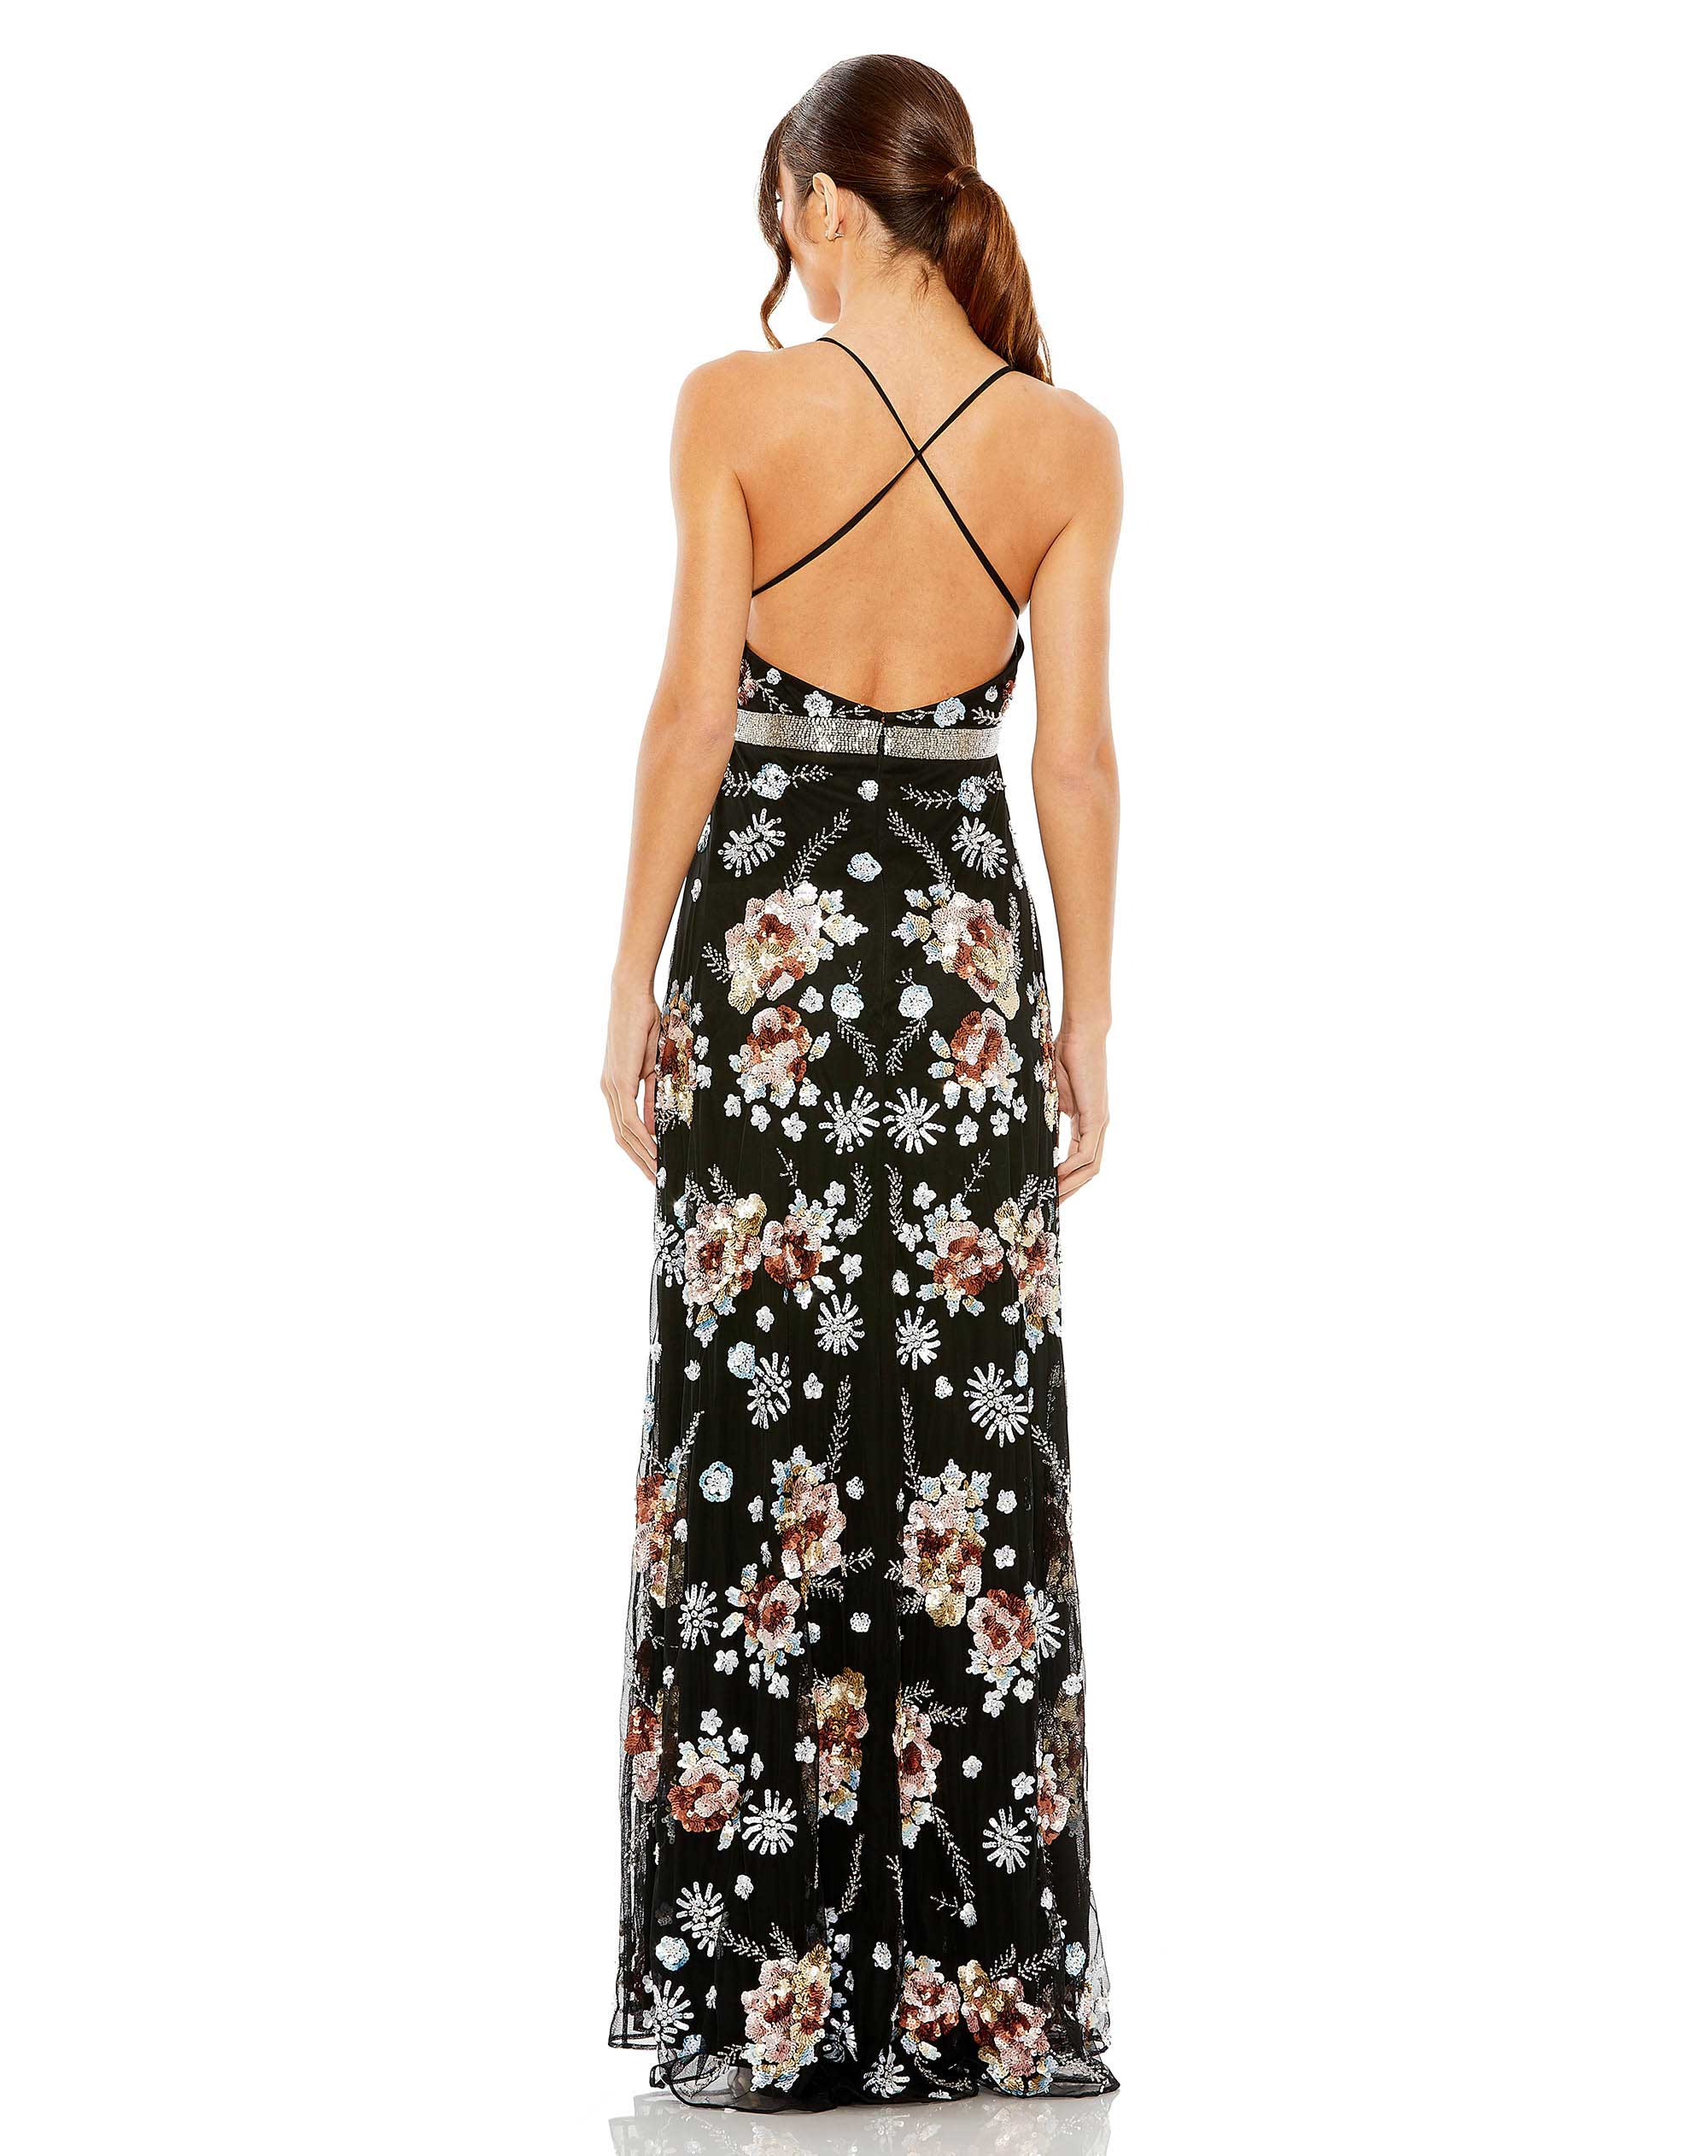 Floral Sequin Embellished Gown | Sample | Sz. 2